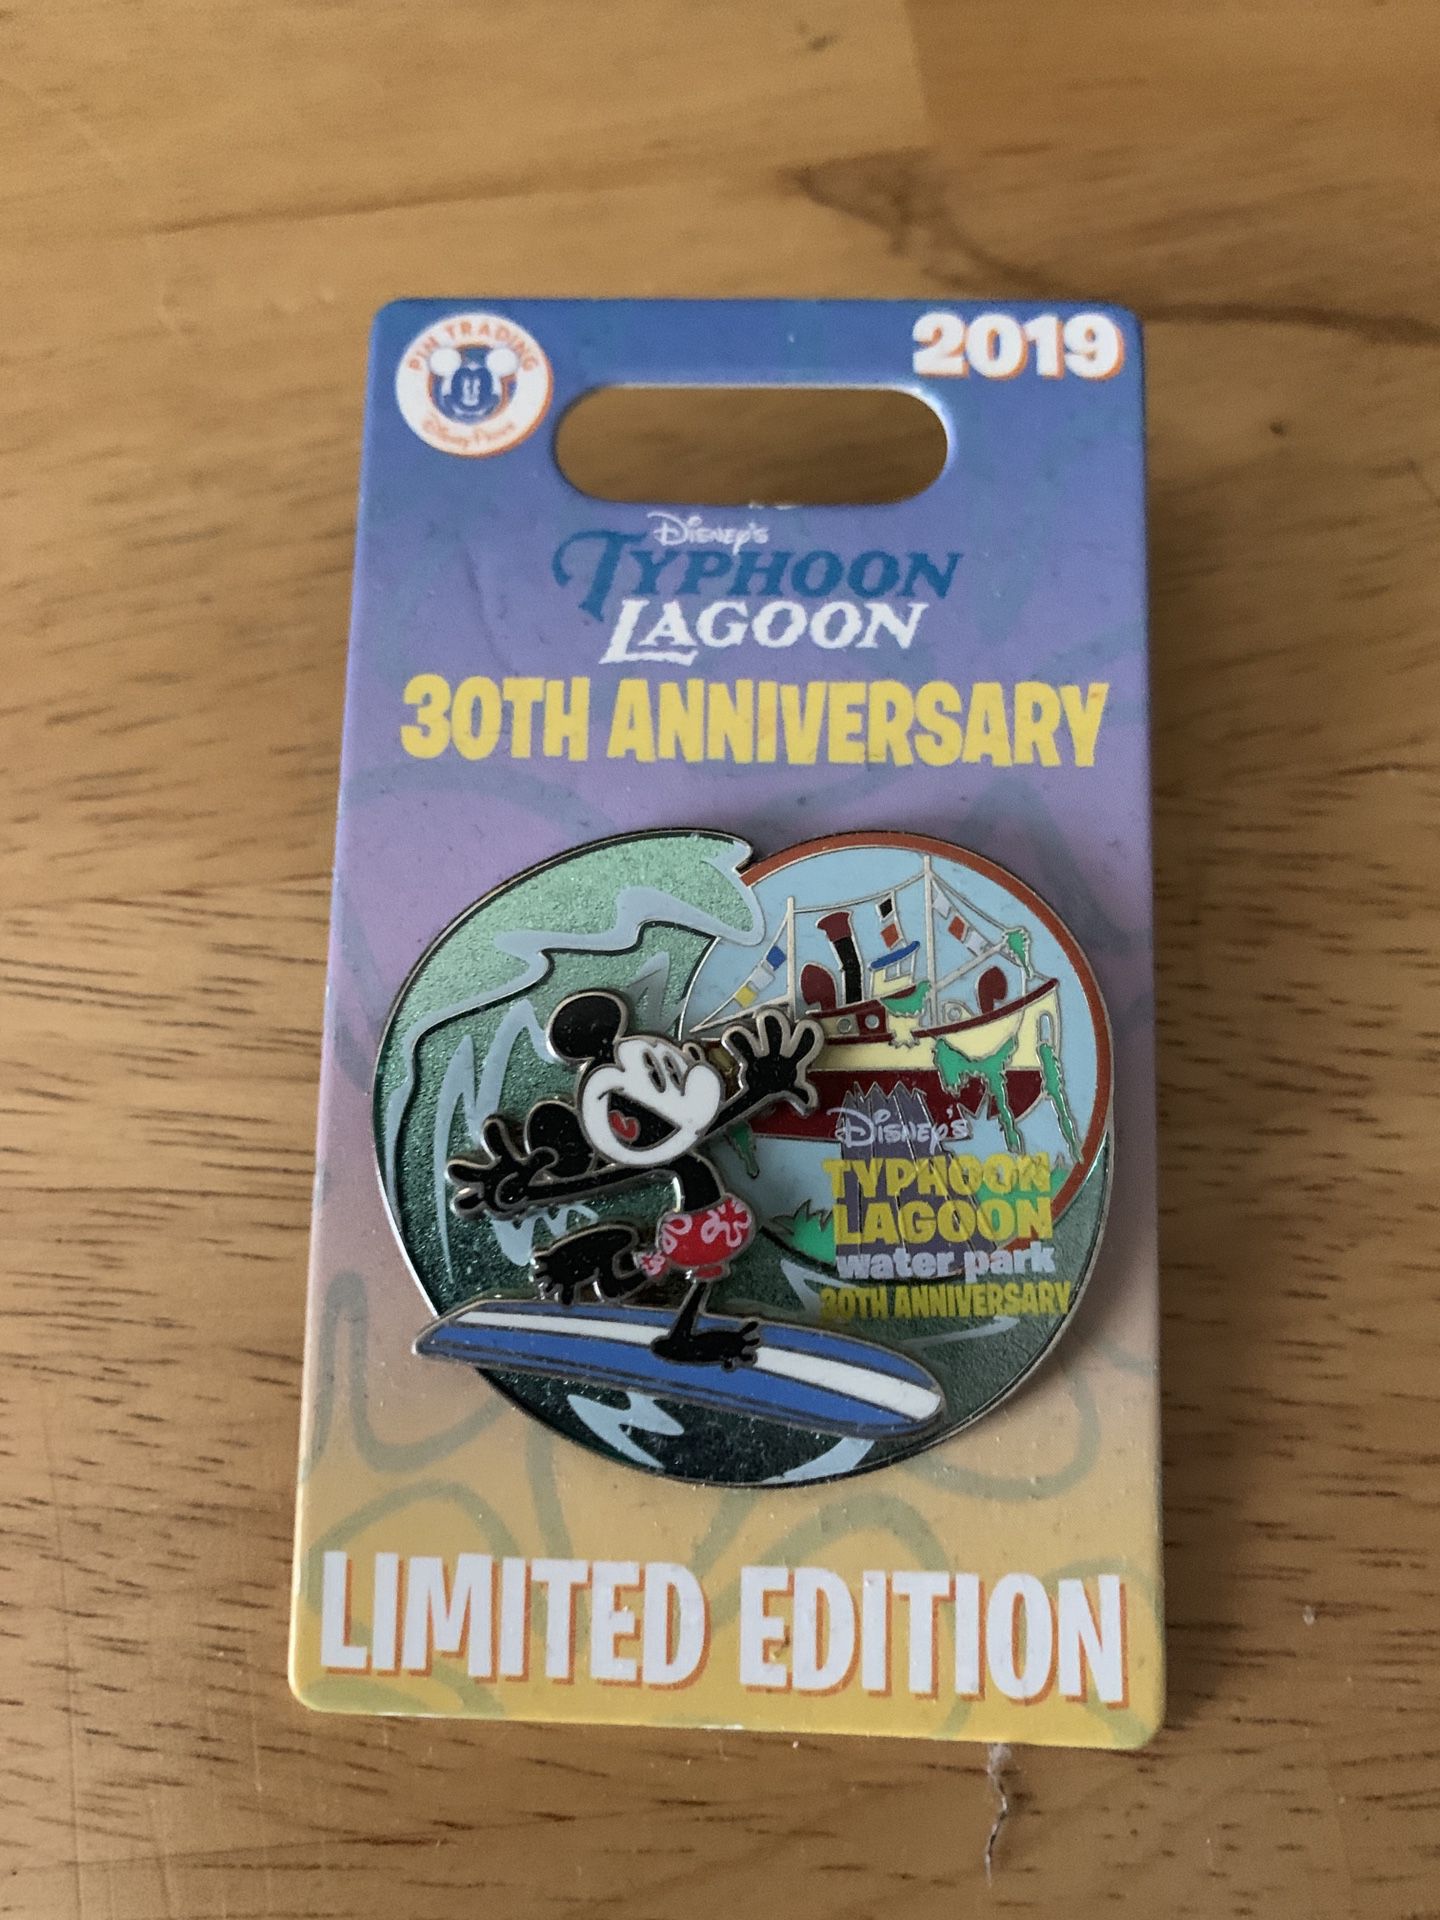 Disney’s Typhoon Lagoon Limited Edition Pin!